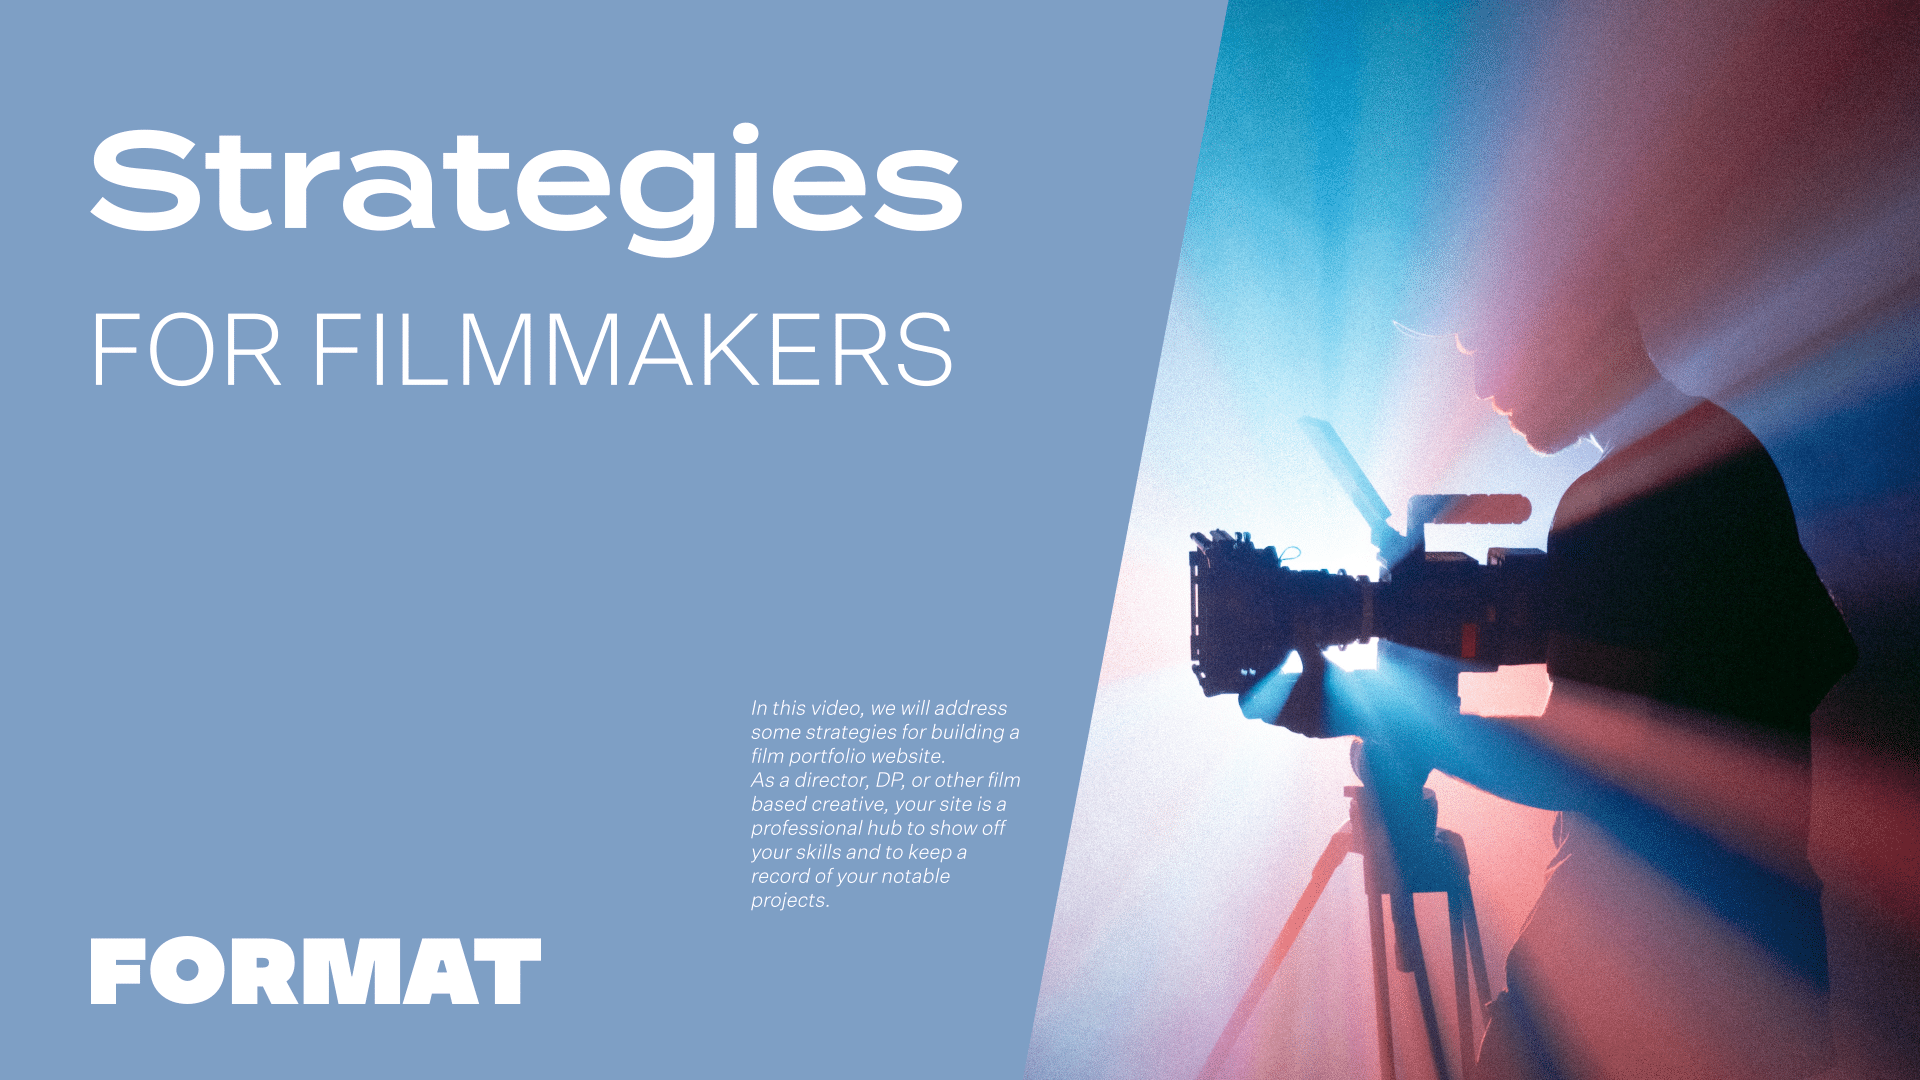 El texto de la imagen dice "Estrategias para cineastas" y muestra una cámara de vídeo